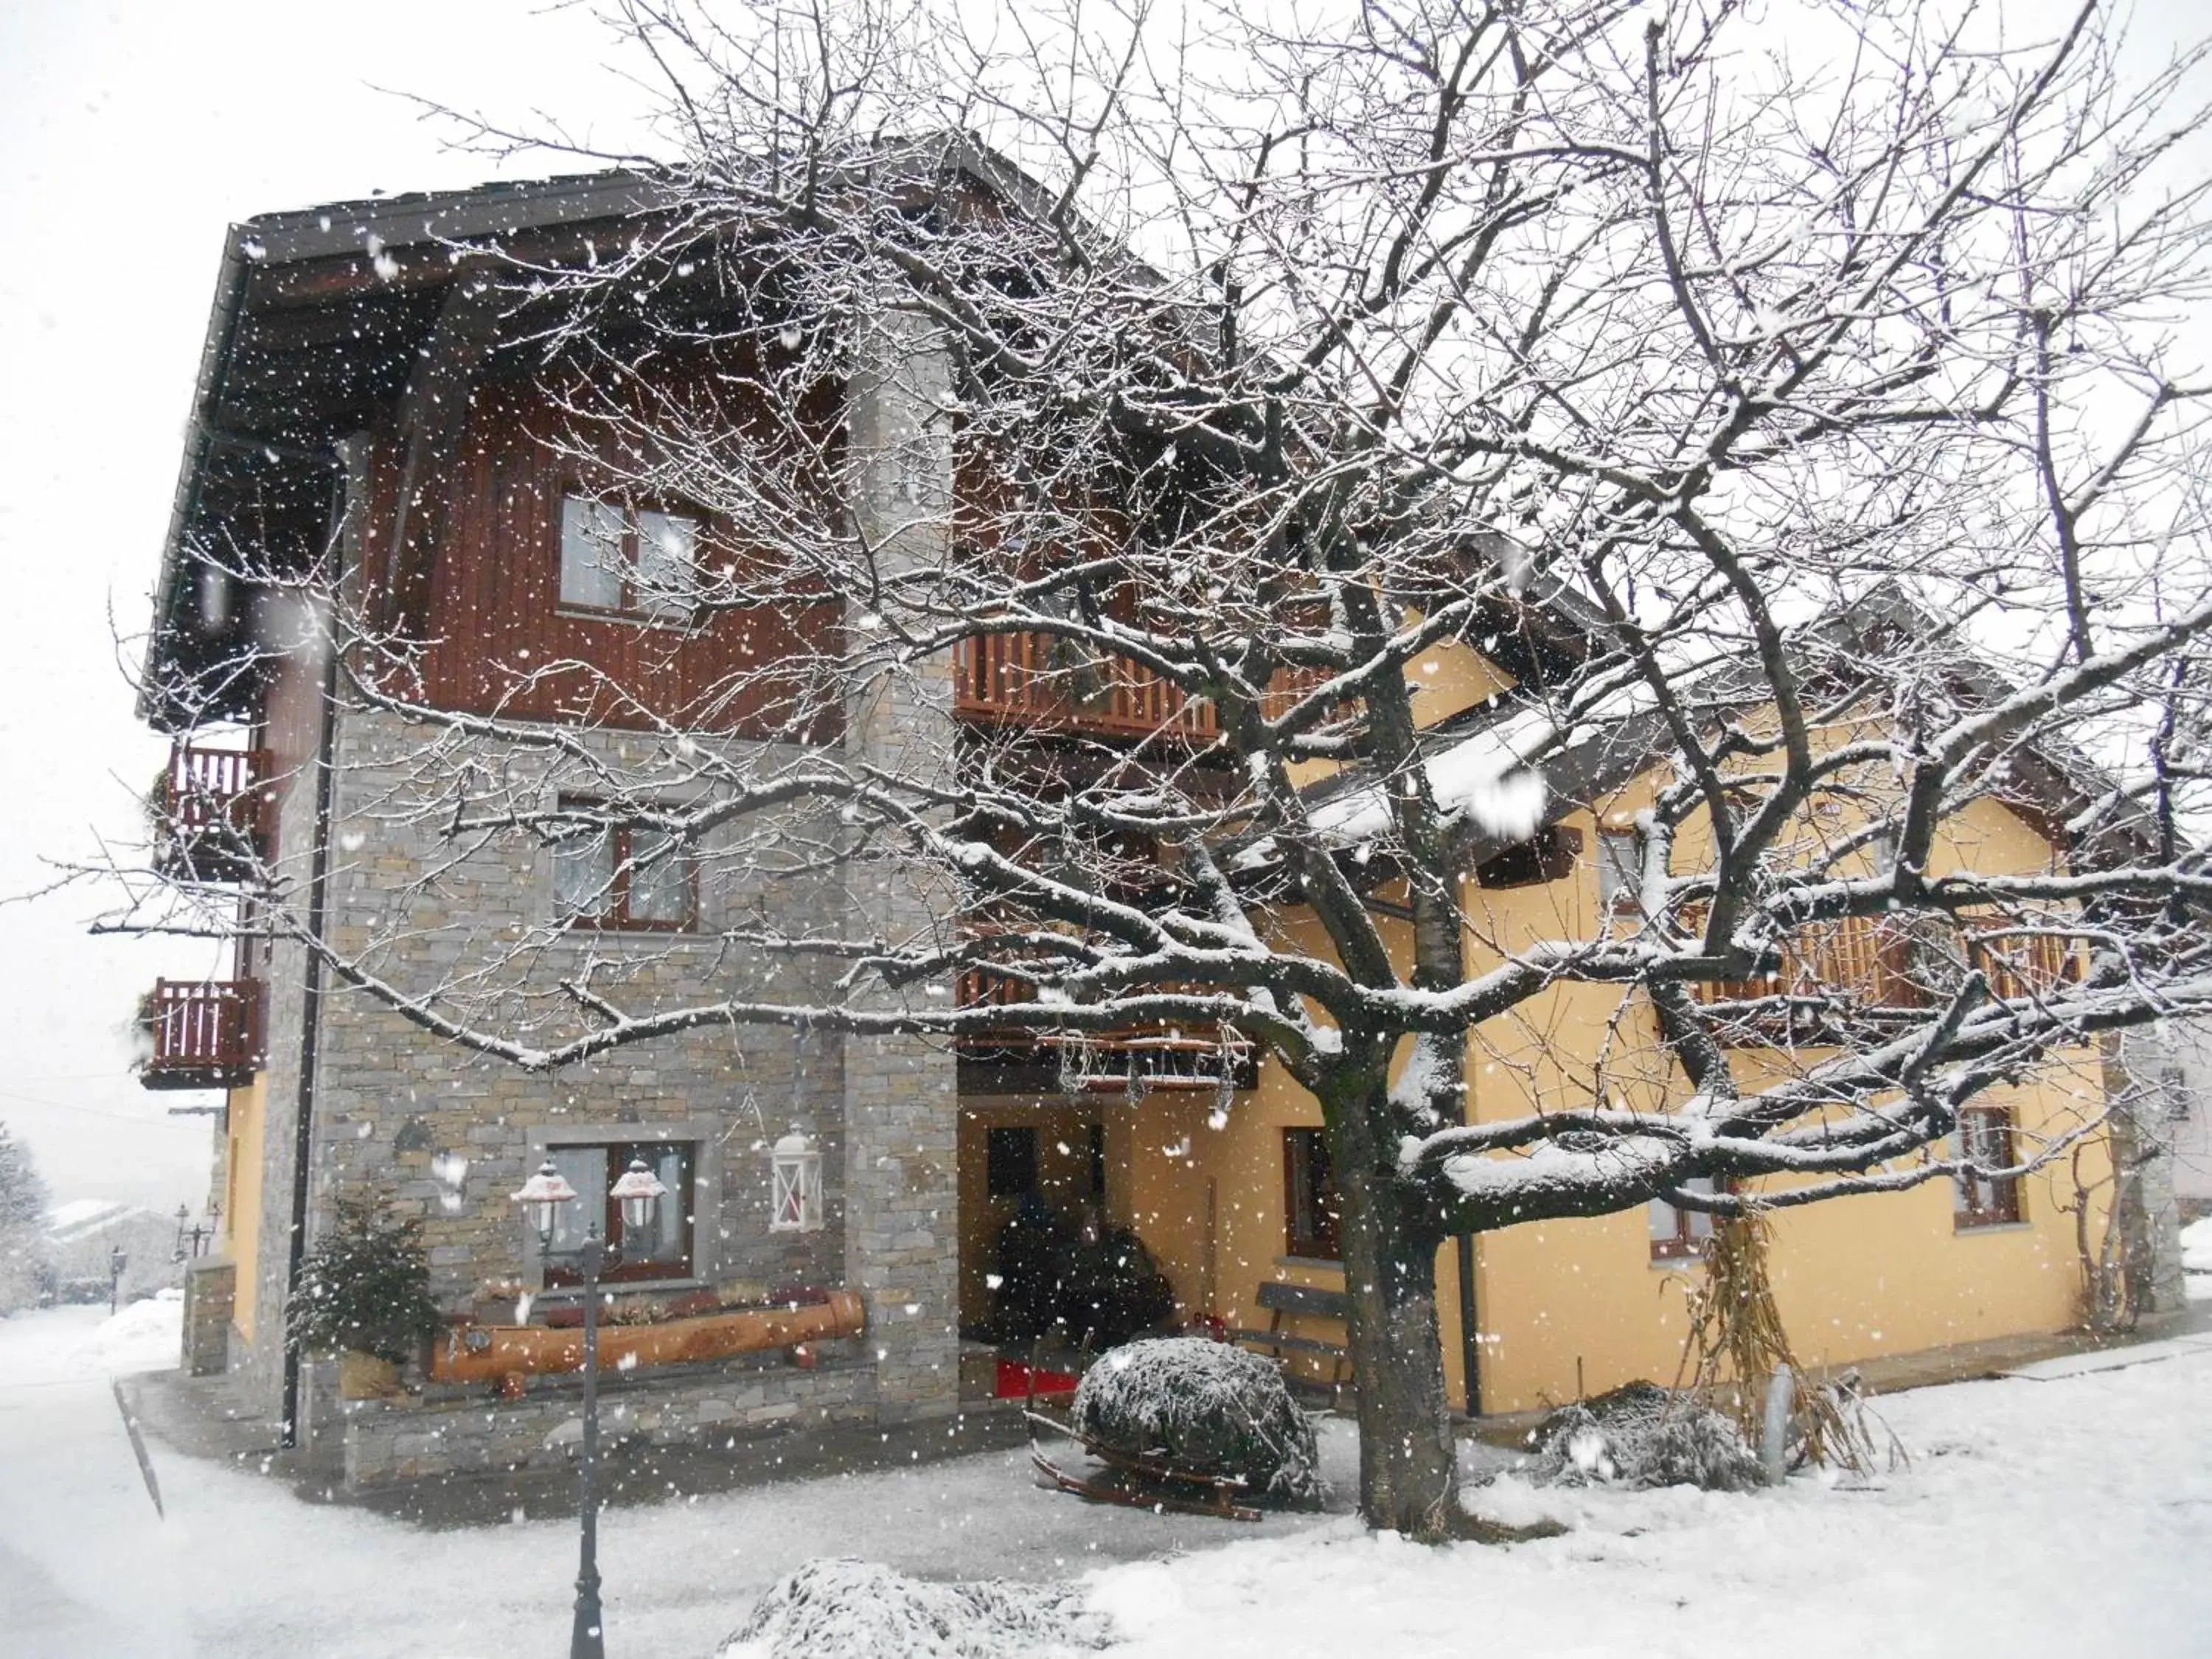 Facade/entrance, Winter in La Vigne de Papagran